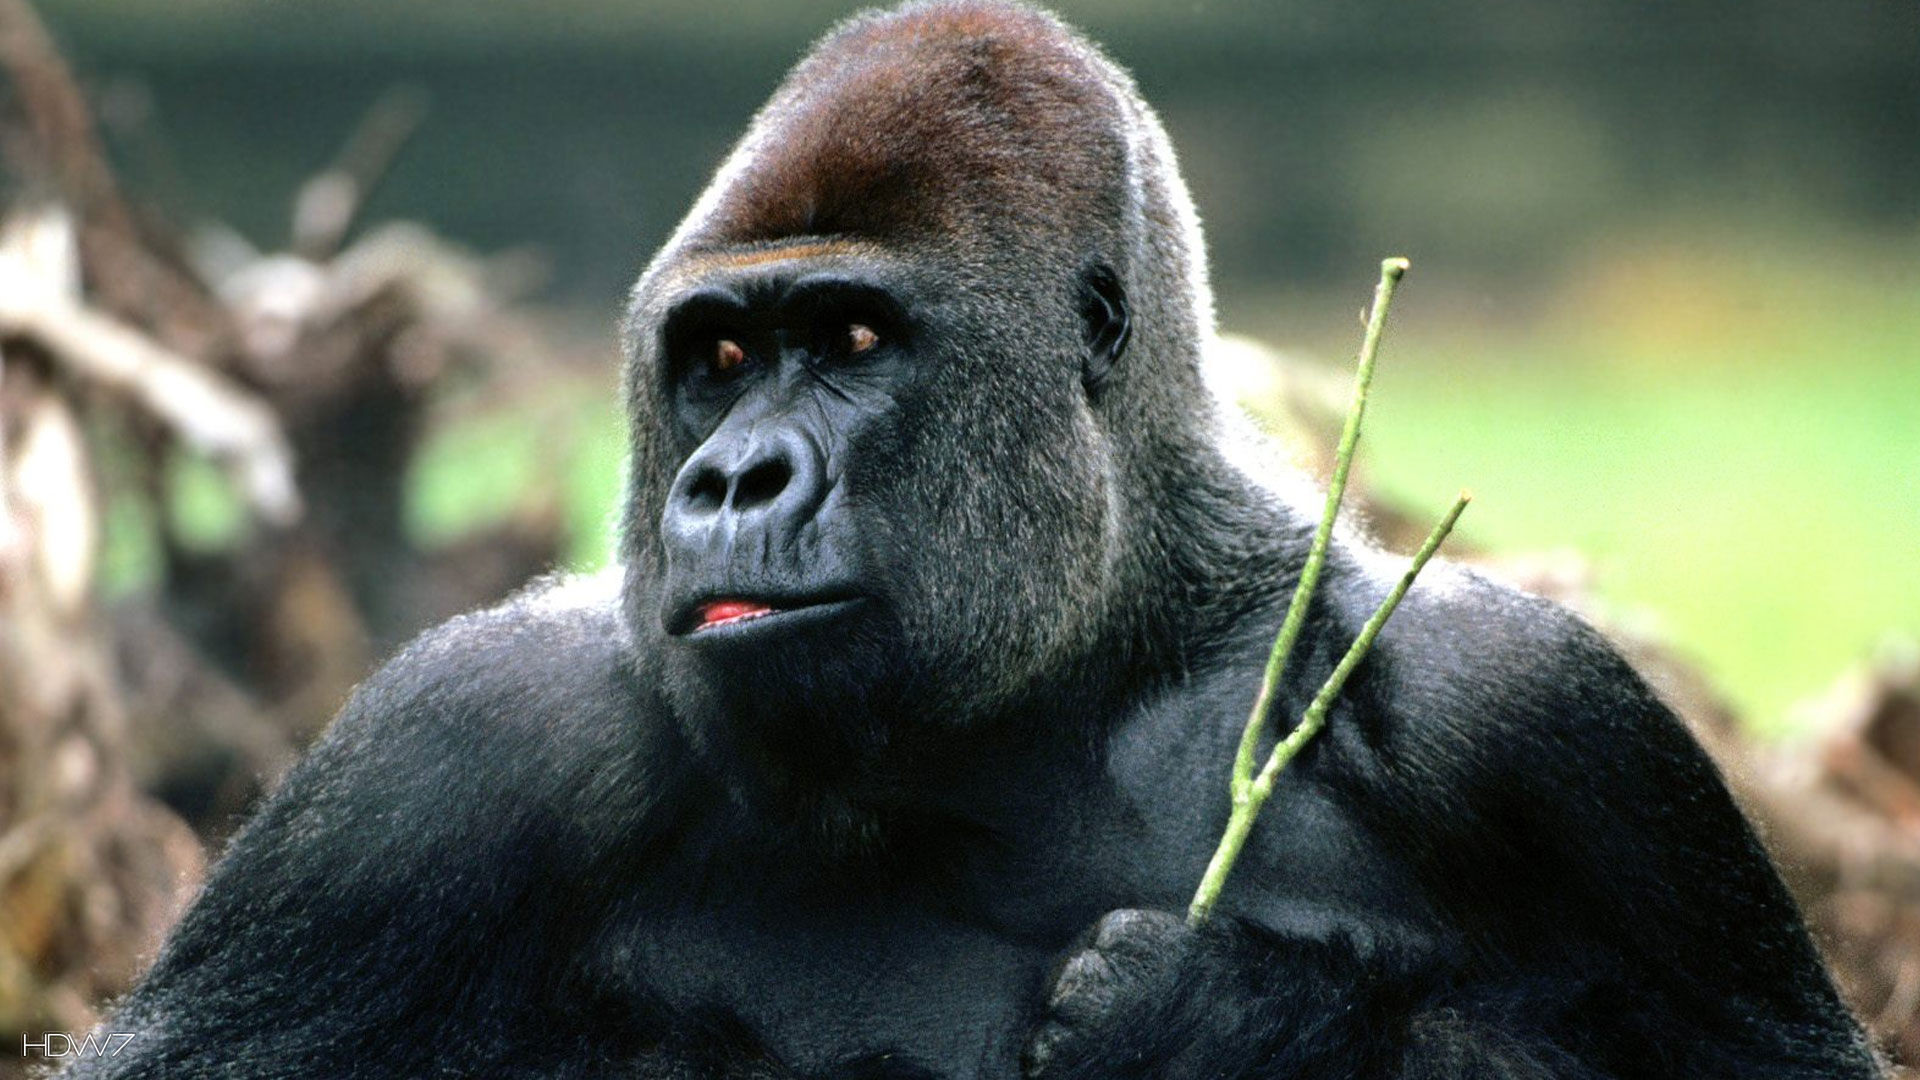 x1440p gorilla images